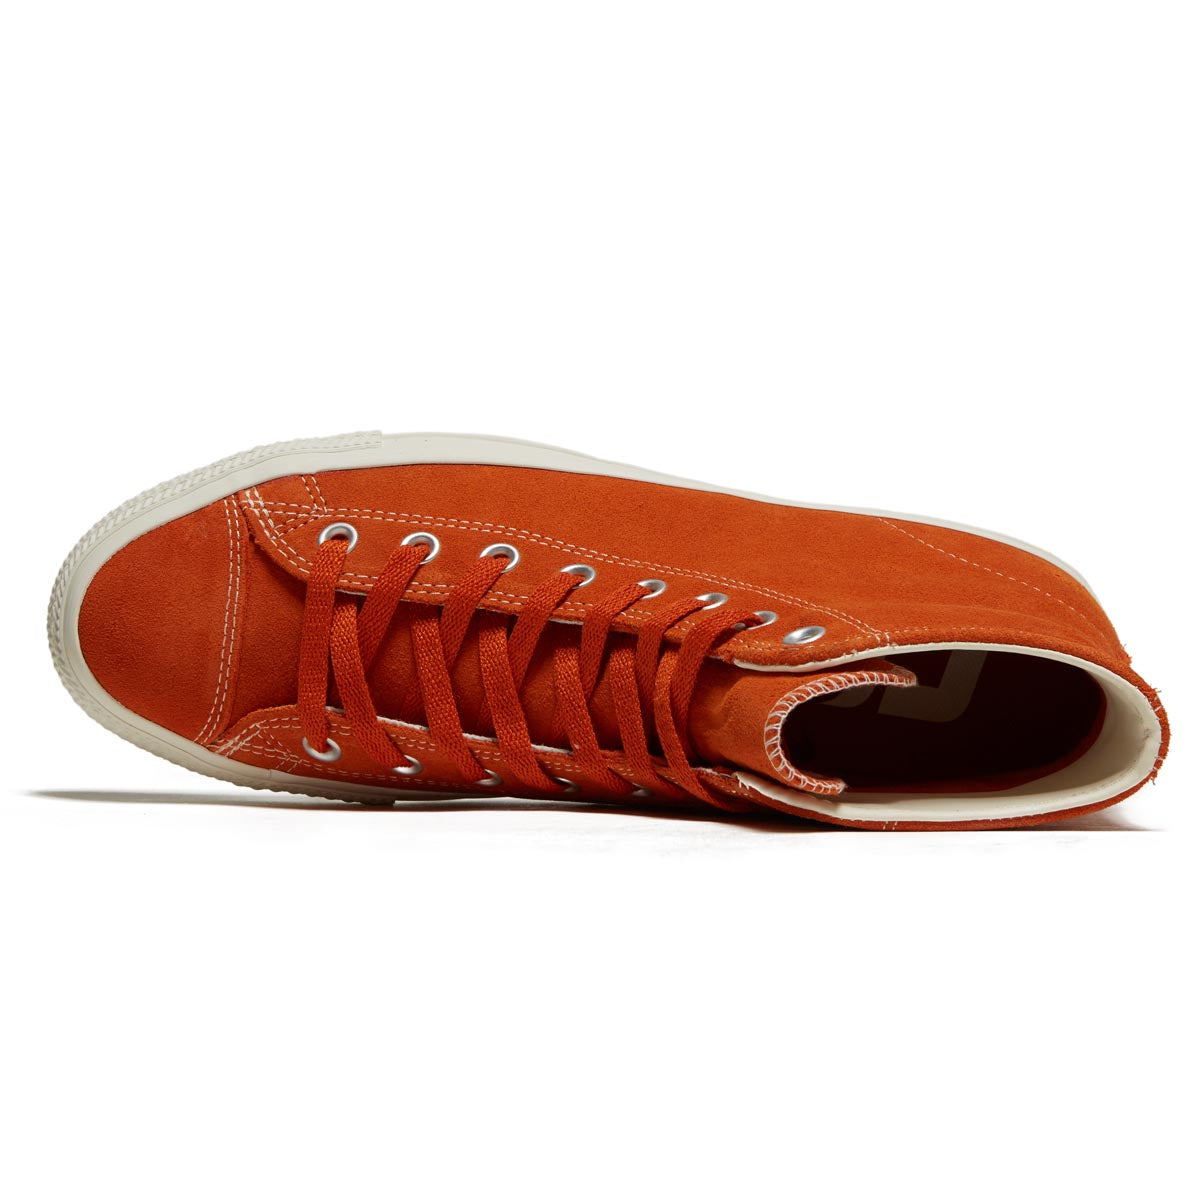 Converse Ctas Pro Hi Shoes - Campfire Orange/Egret image 3